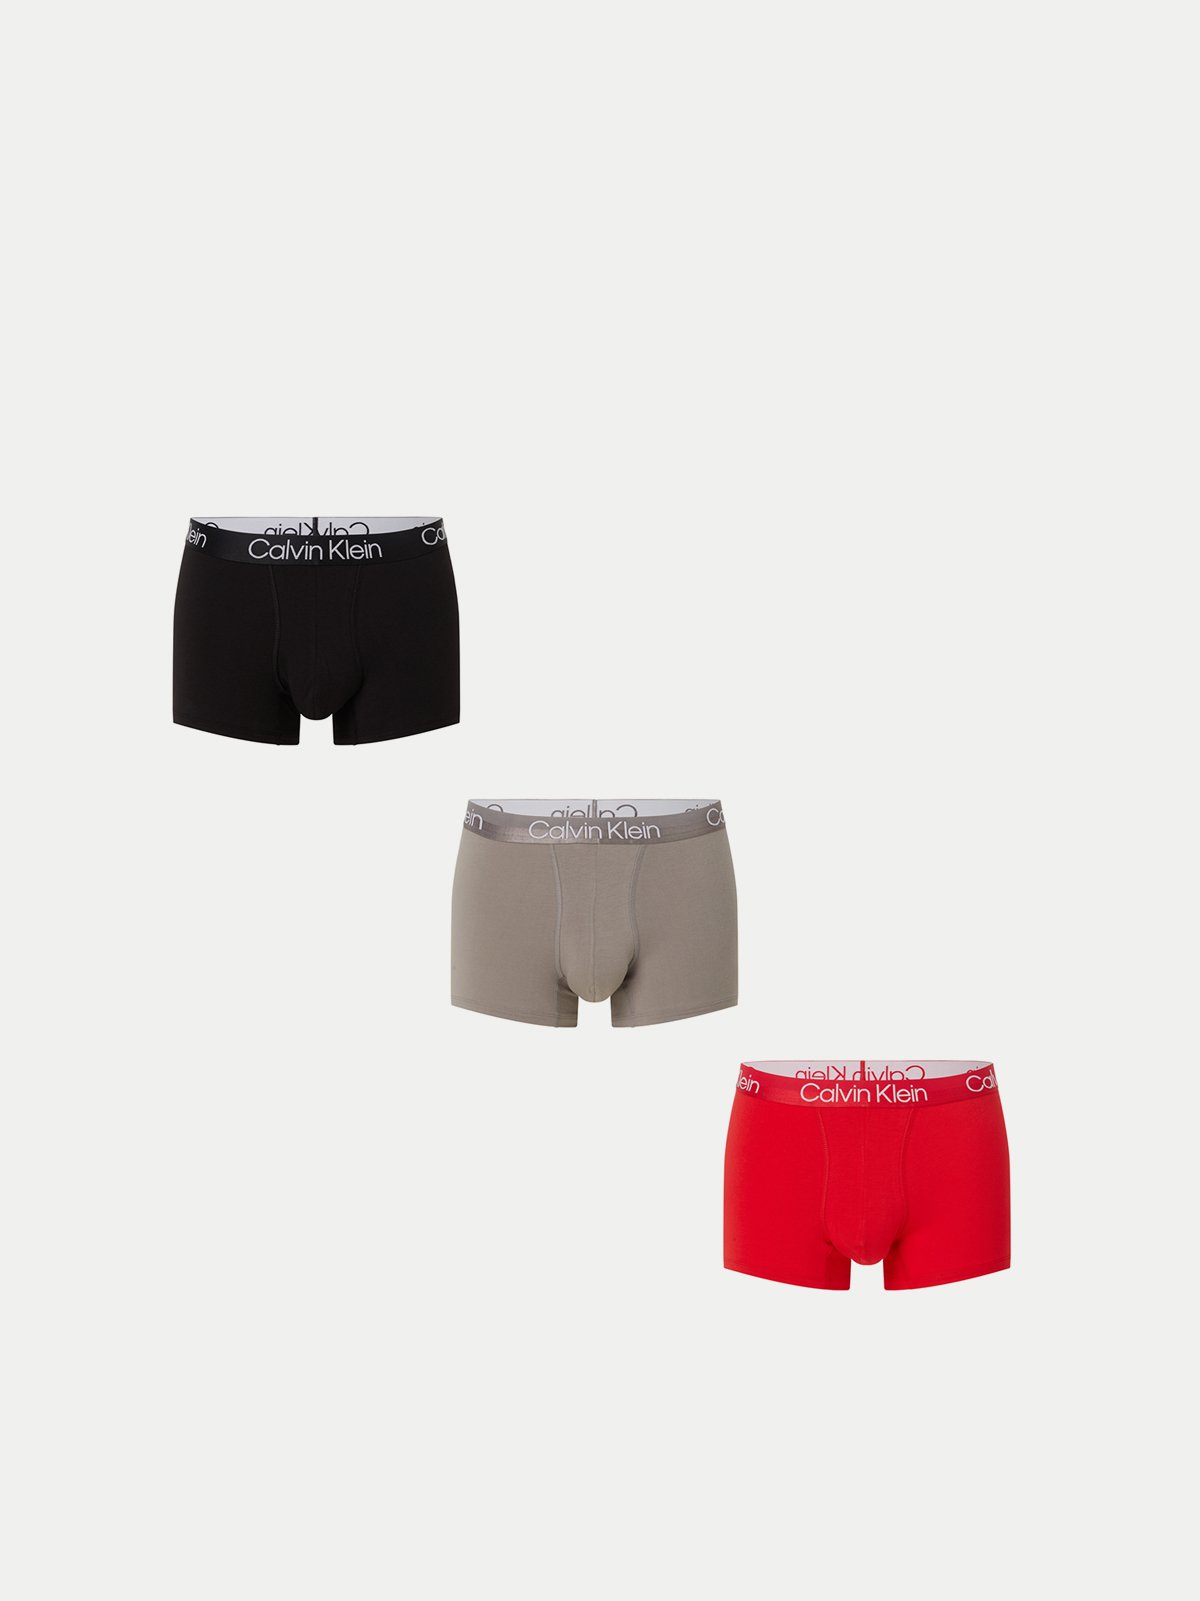 Men's underwear set 3PK red Calvin Klein Underwear